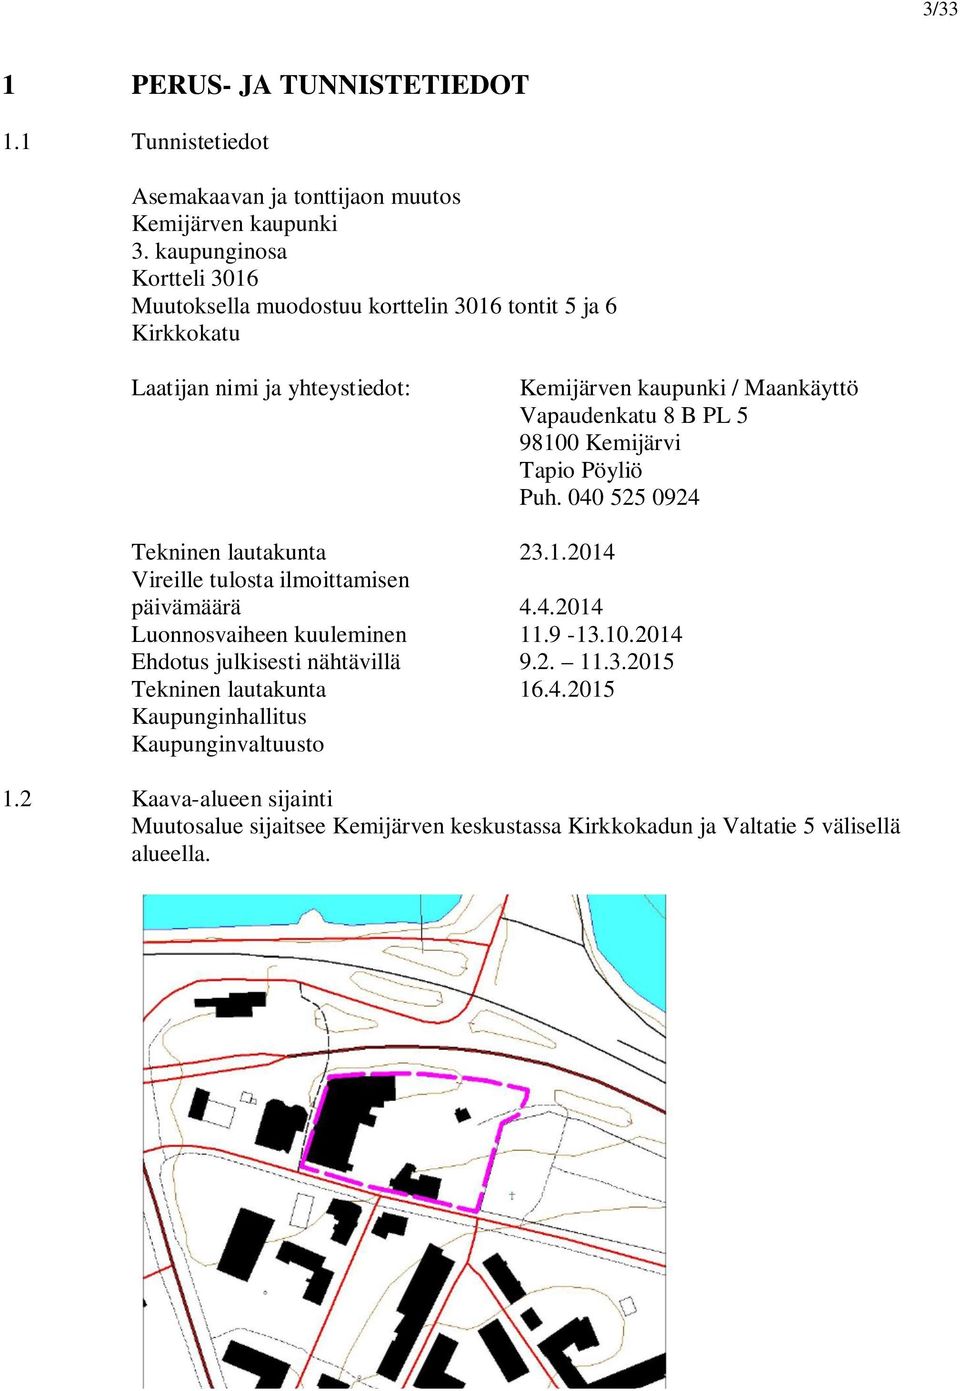 PL 5 98100 Kemijärvi Tapio Pöyliö Puh. 040 525 0924 Tekninen lautakunta 23.1.2014 Vireille tulosta ilmoittamisen päivämäärä 4.4.2014 Luonnosvaiheen kuuleminen 11.9-13.10.2014 Ehdotus julkisesti nähtävillä 9.